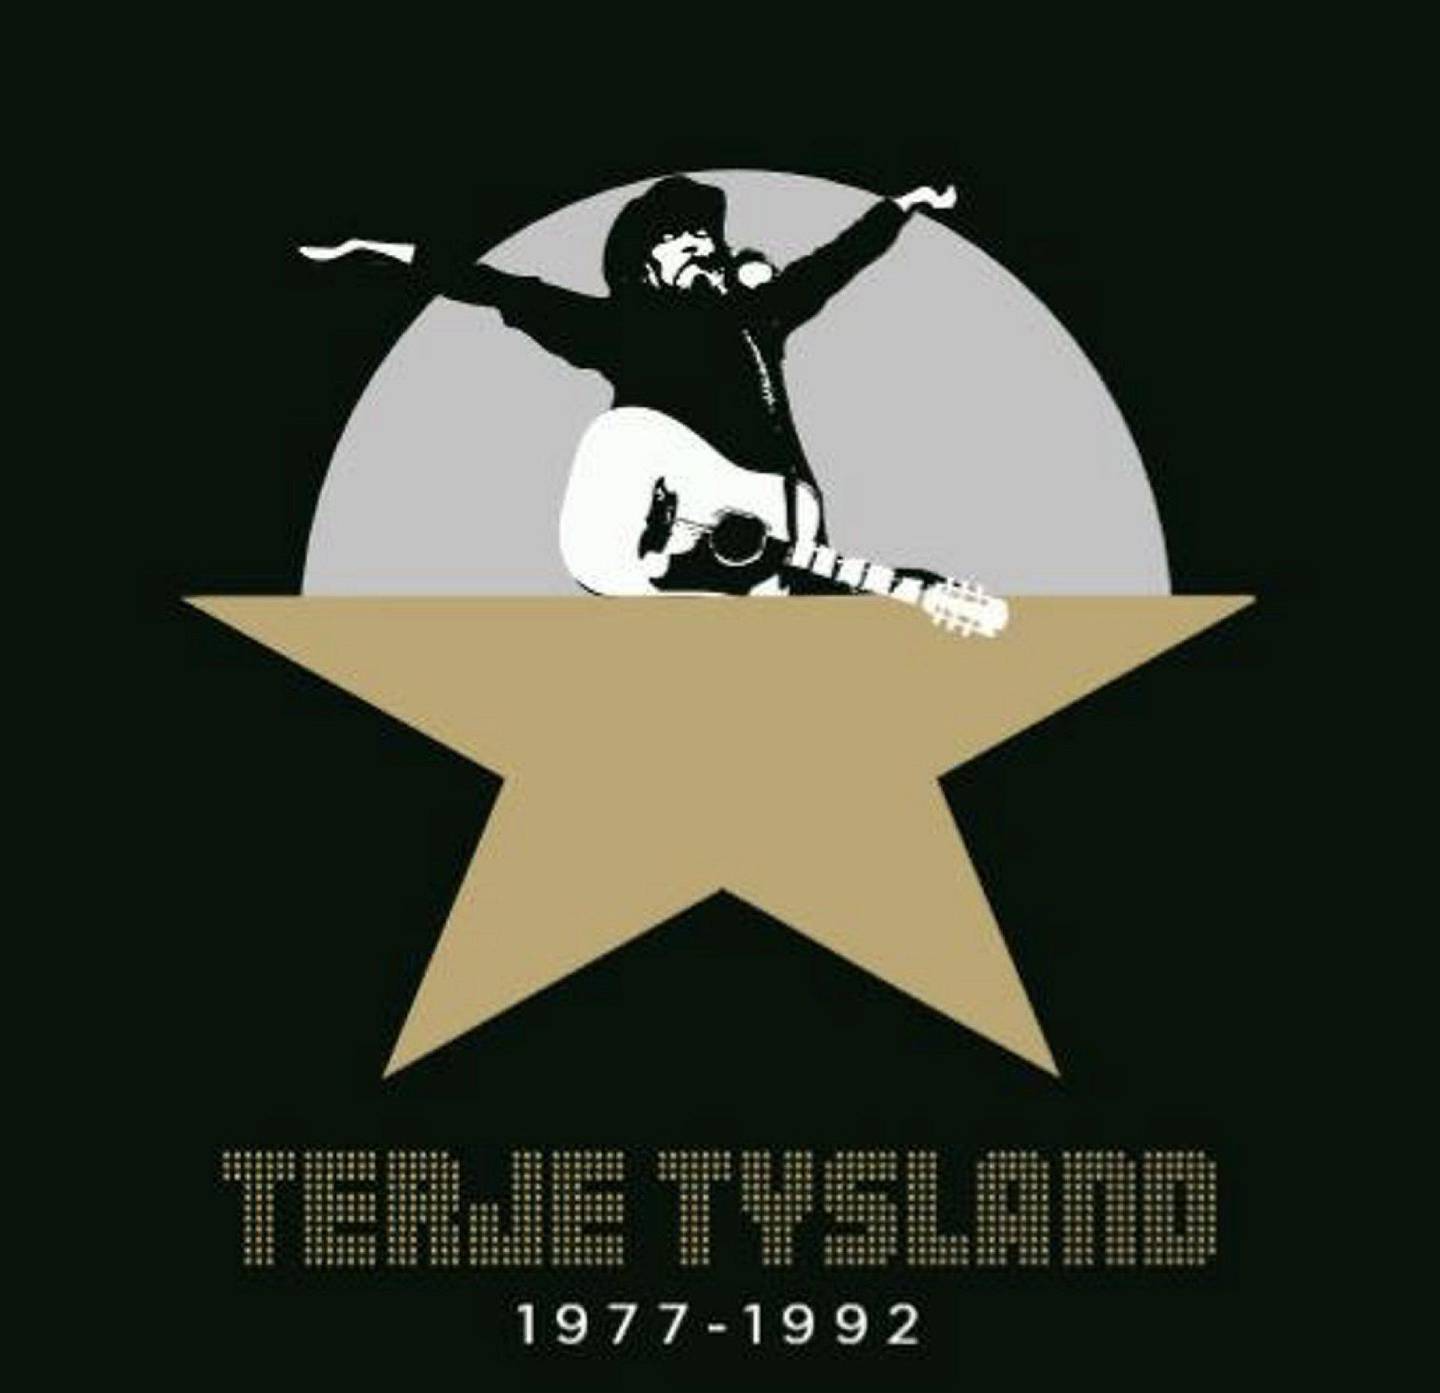 Terje Tysland,KUL Anm Musikk B:«1977 – 1992»
KUL Anm Musikk C:Tronda Musikk